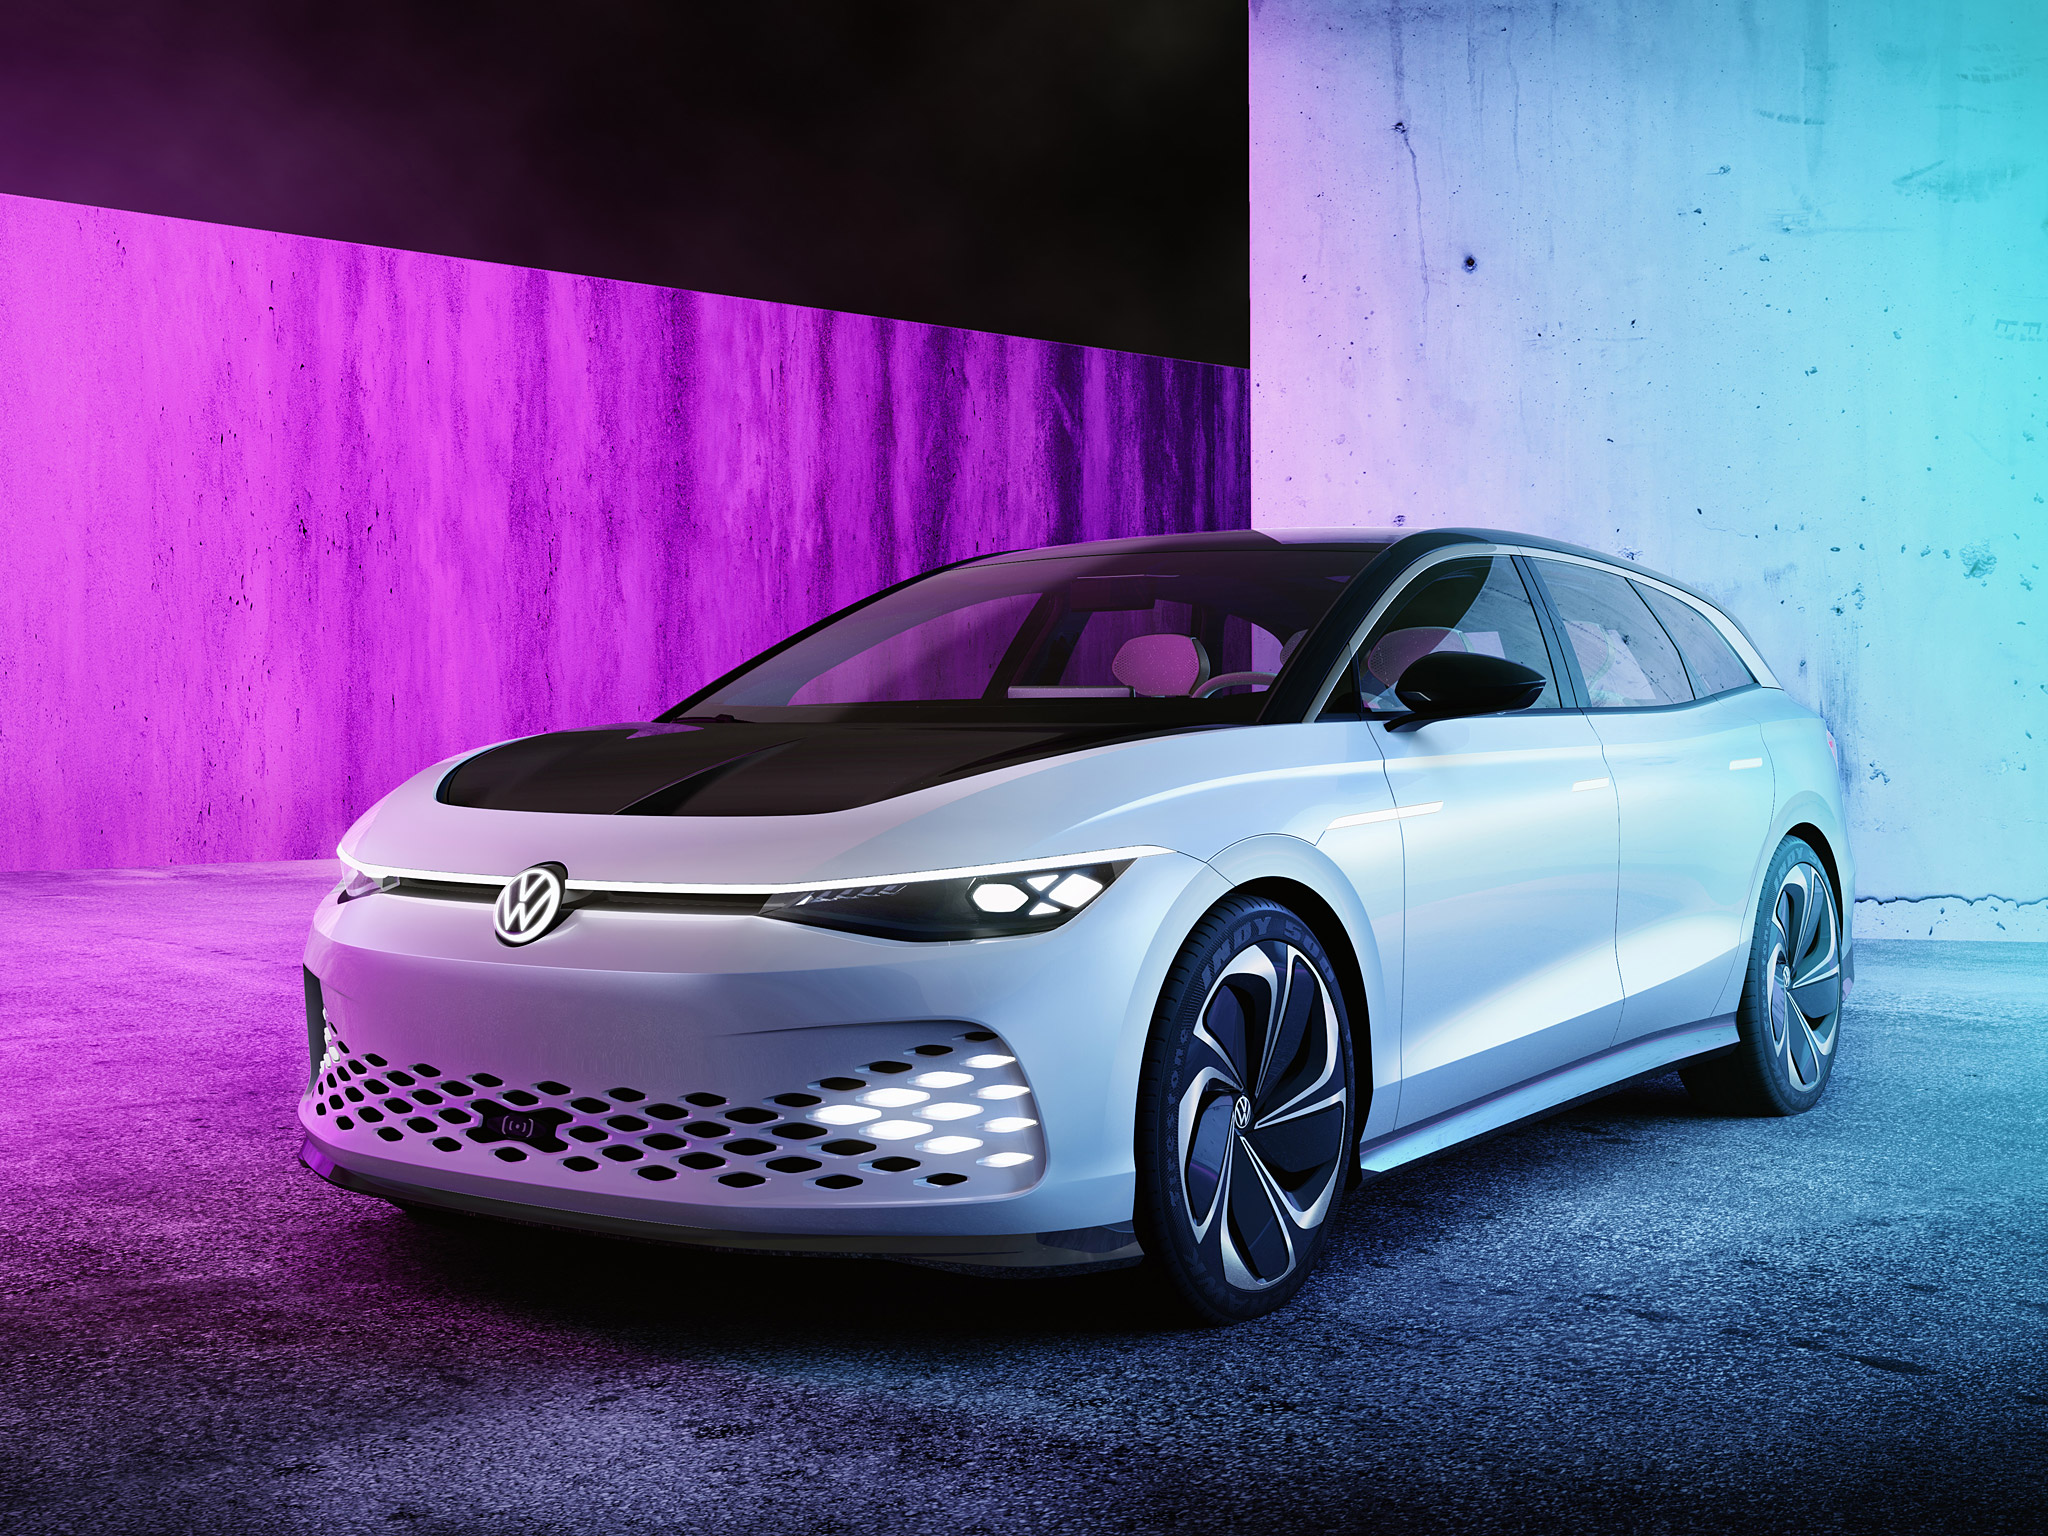  2019 Volkswagen ID Space Vizzion Concept Wallpaper.